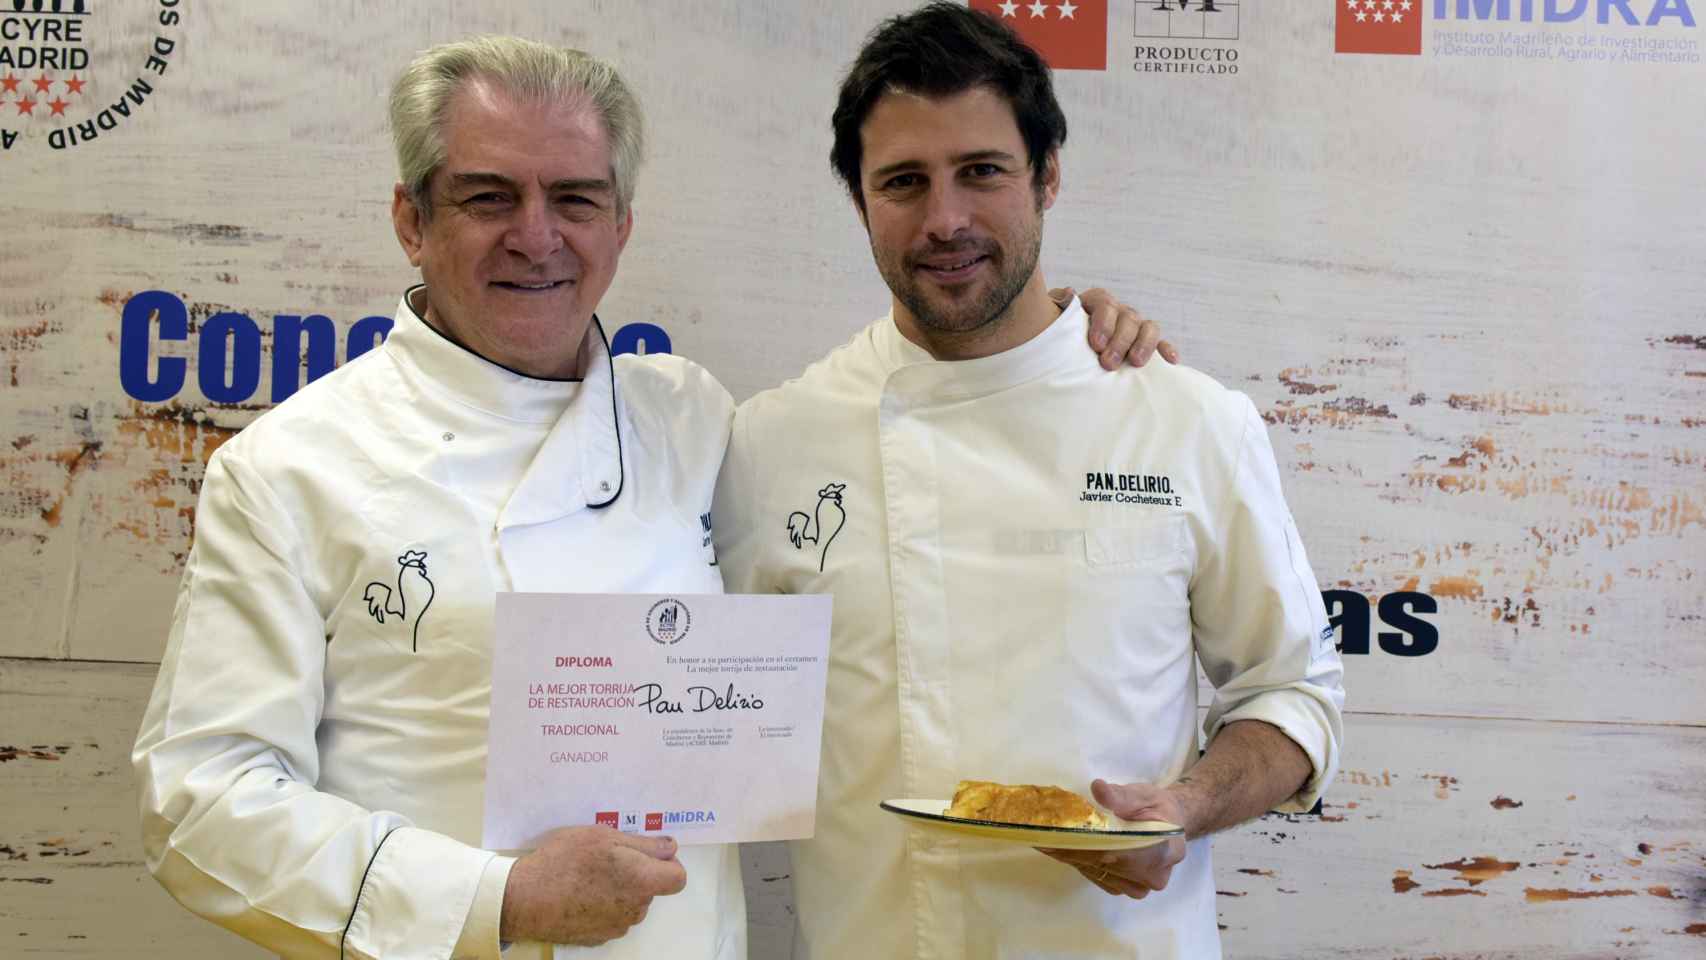 Javier Cocheteux padre y Javier Cocheteux hijo, junto a la mejor torrija de la Comunidad de Madrid.